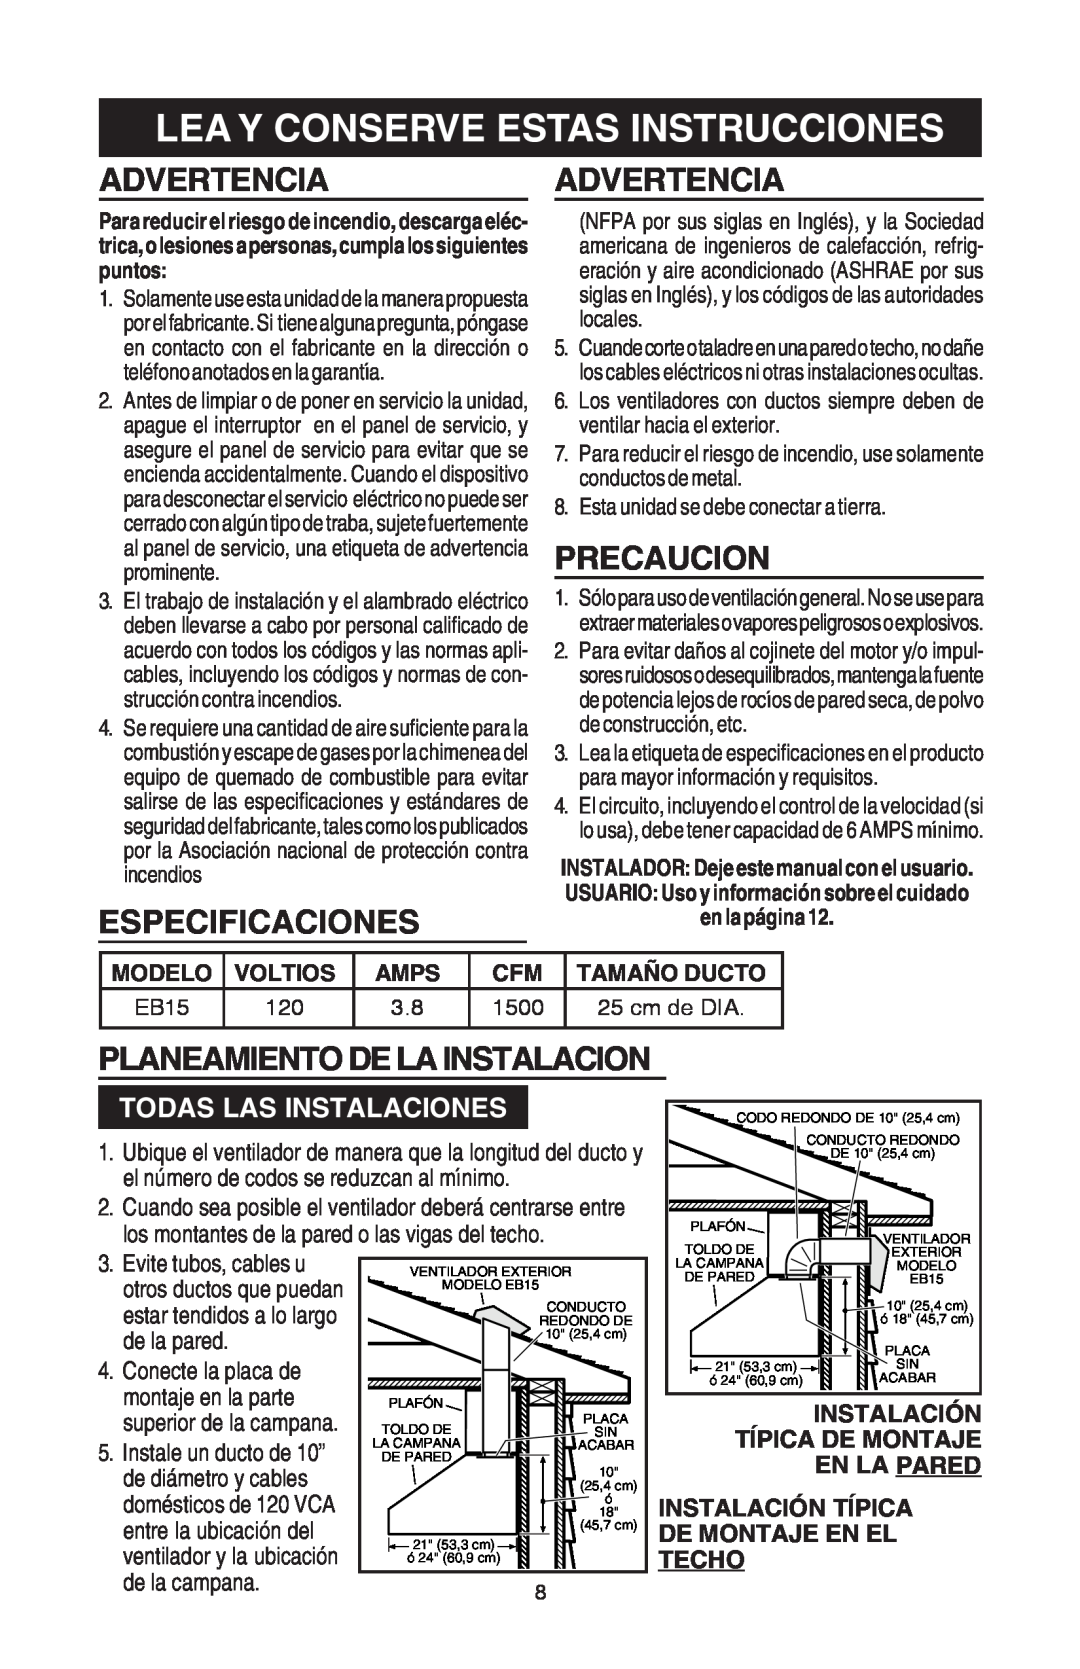 Broan EB15 manual Lea Y Conserve Estas Instrucciones, Advertenciaadvertencia, Especificaciones, Precaucion 